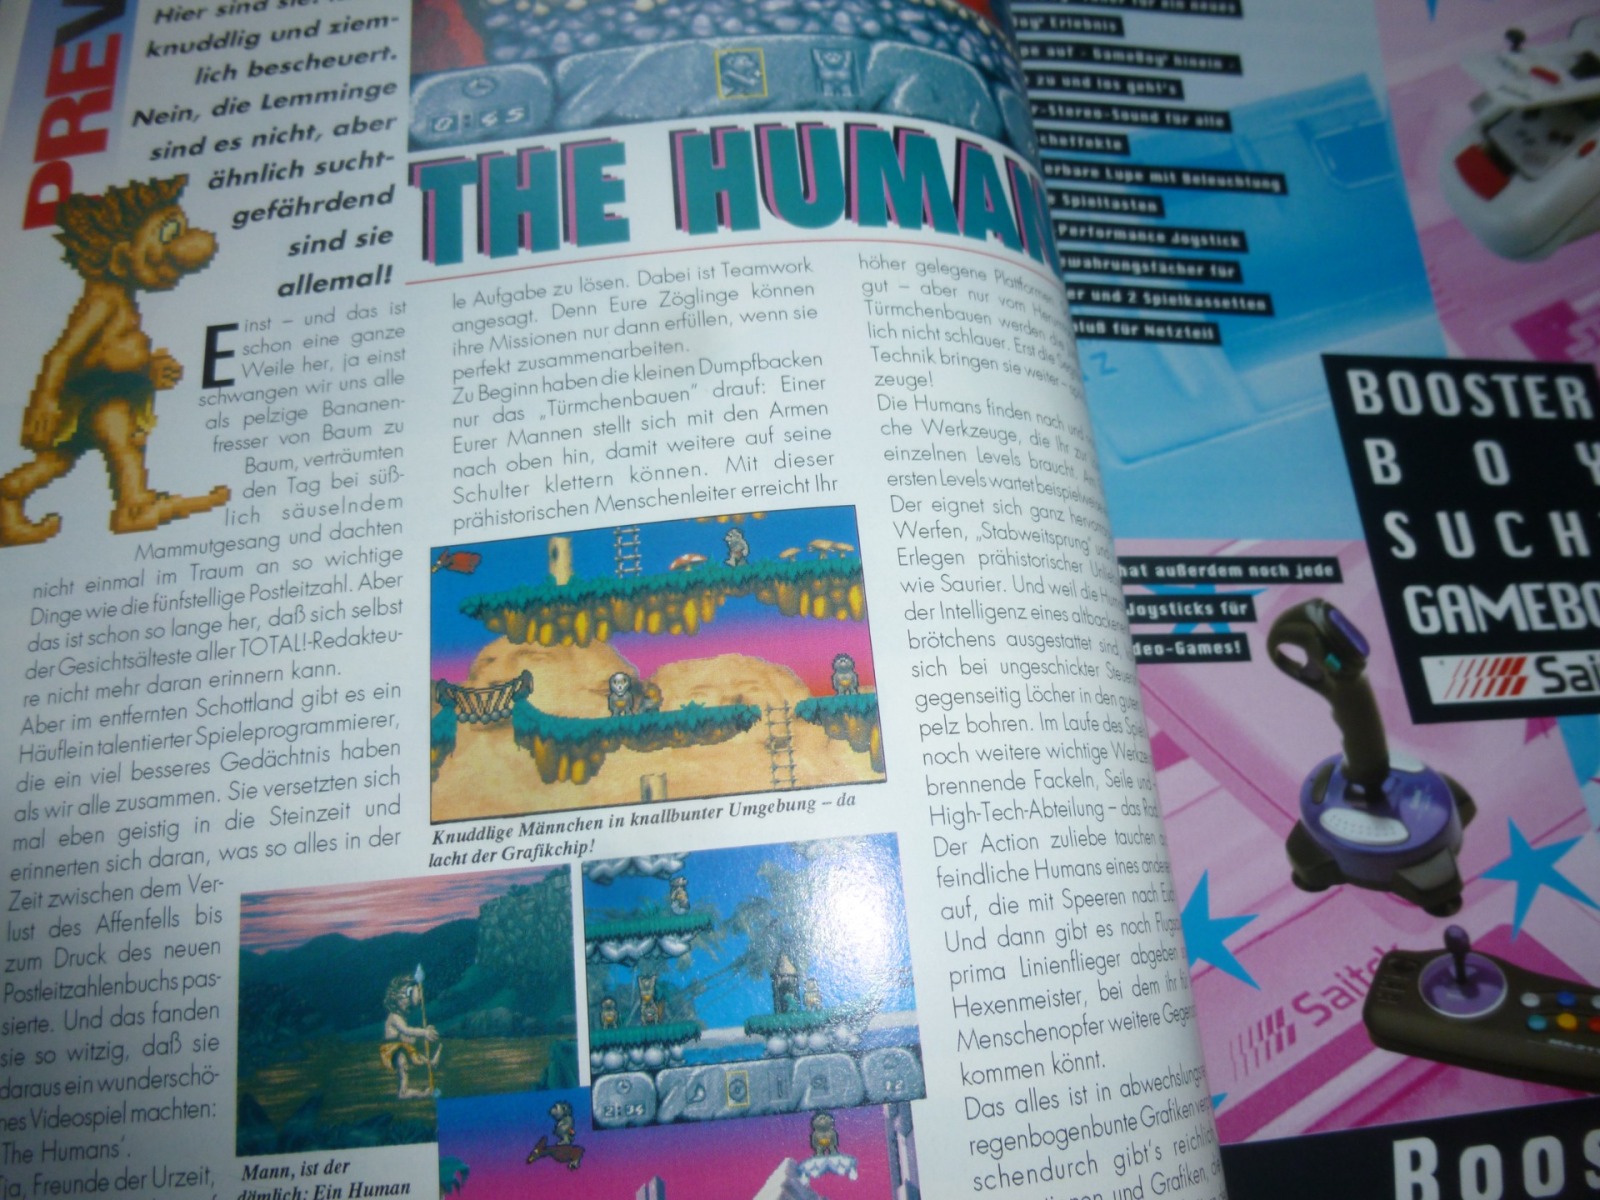 TOTAL Das unabhängige Magazin - 100 Nintendo - Ausgabe 12/93 1993 4